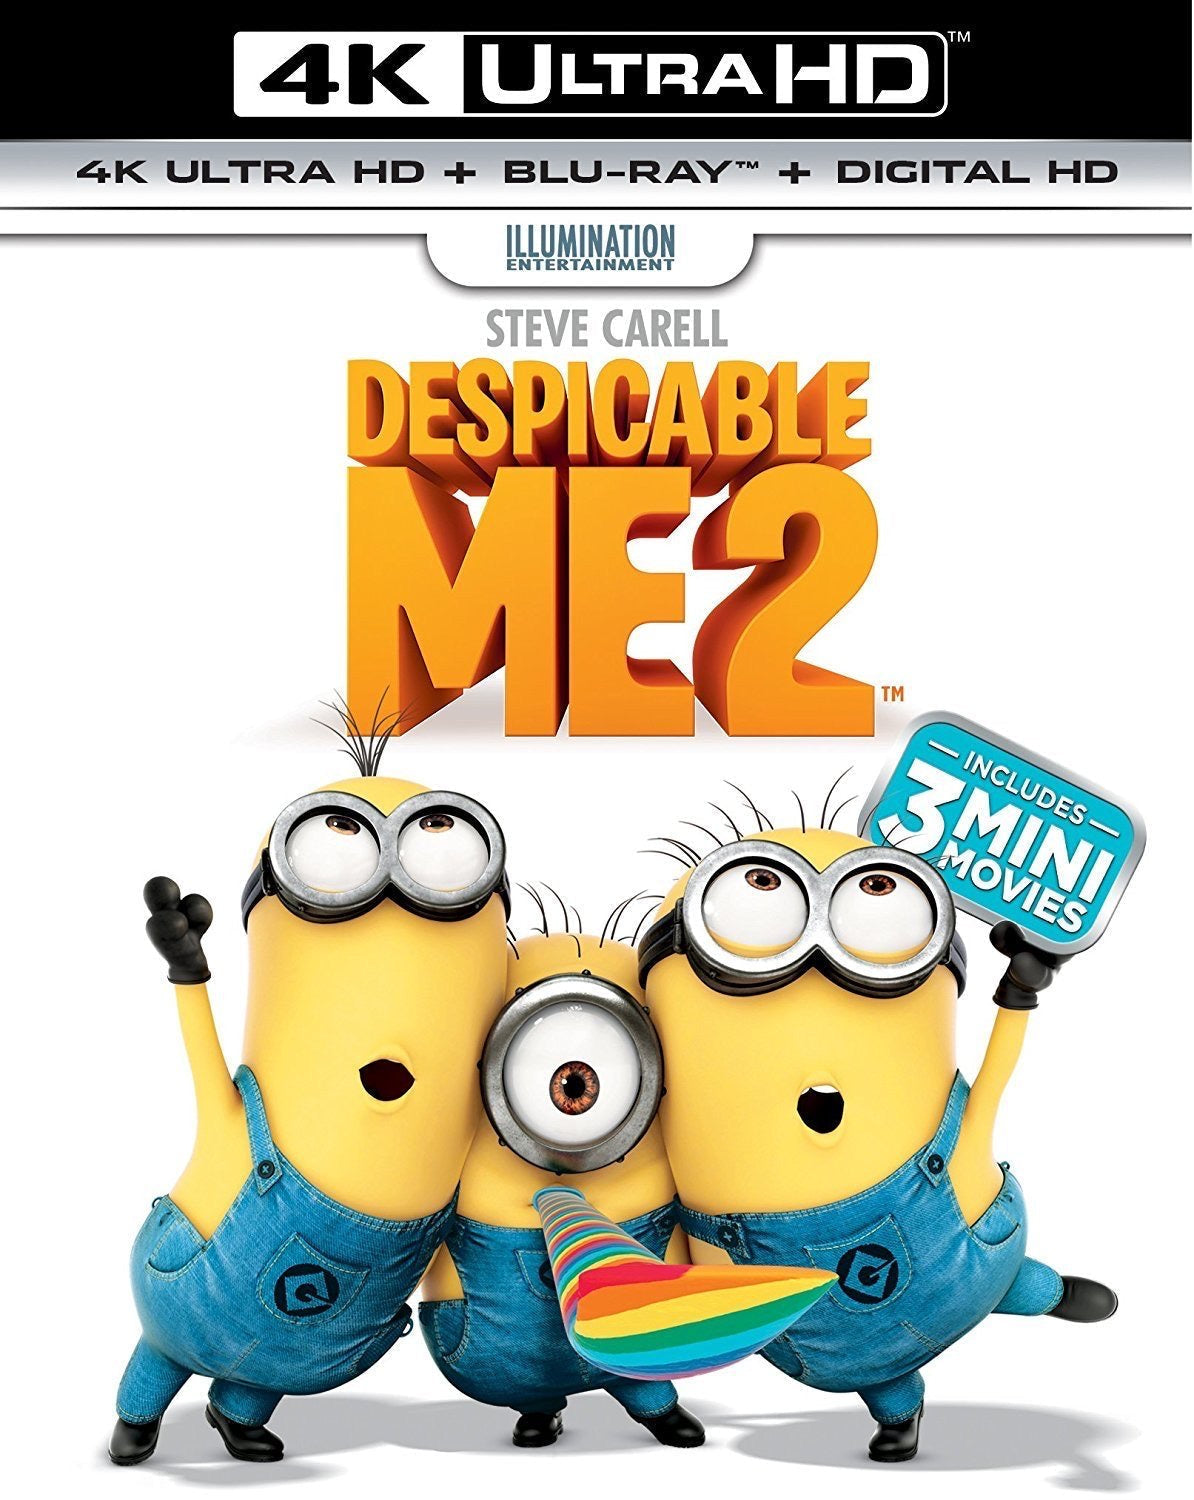 Despicable Me 2 (2013: Ports Via MA) iTunes 4K code